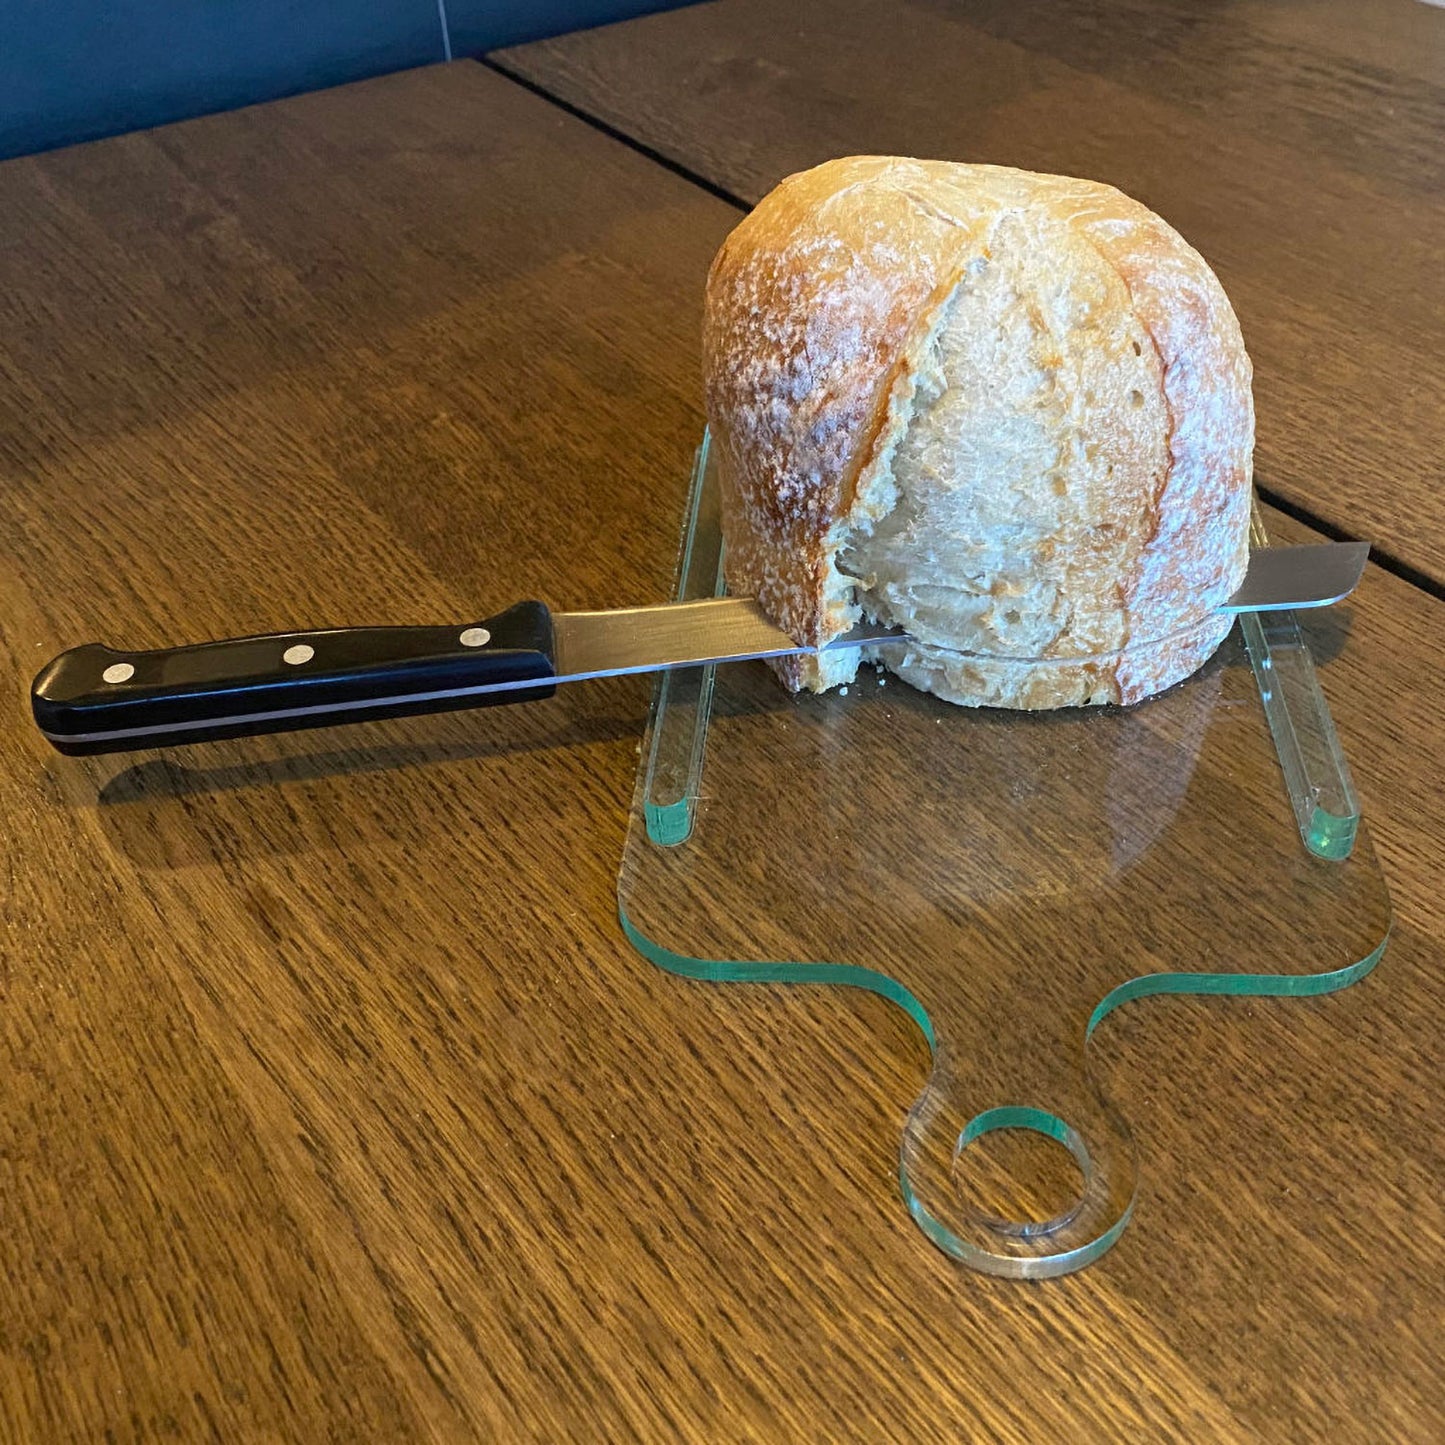 Make a Unique Bread Slicing Guide